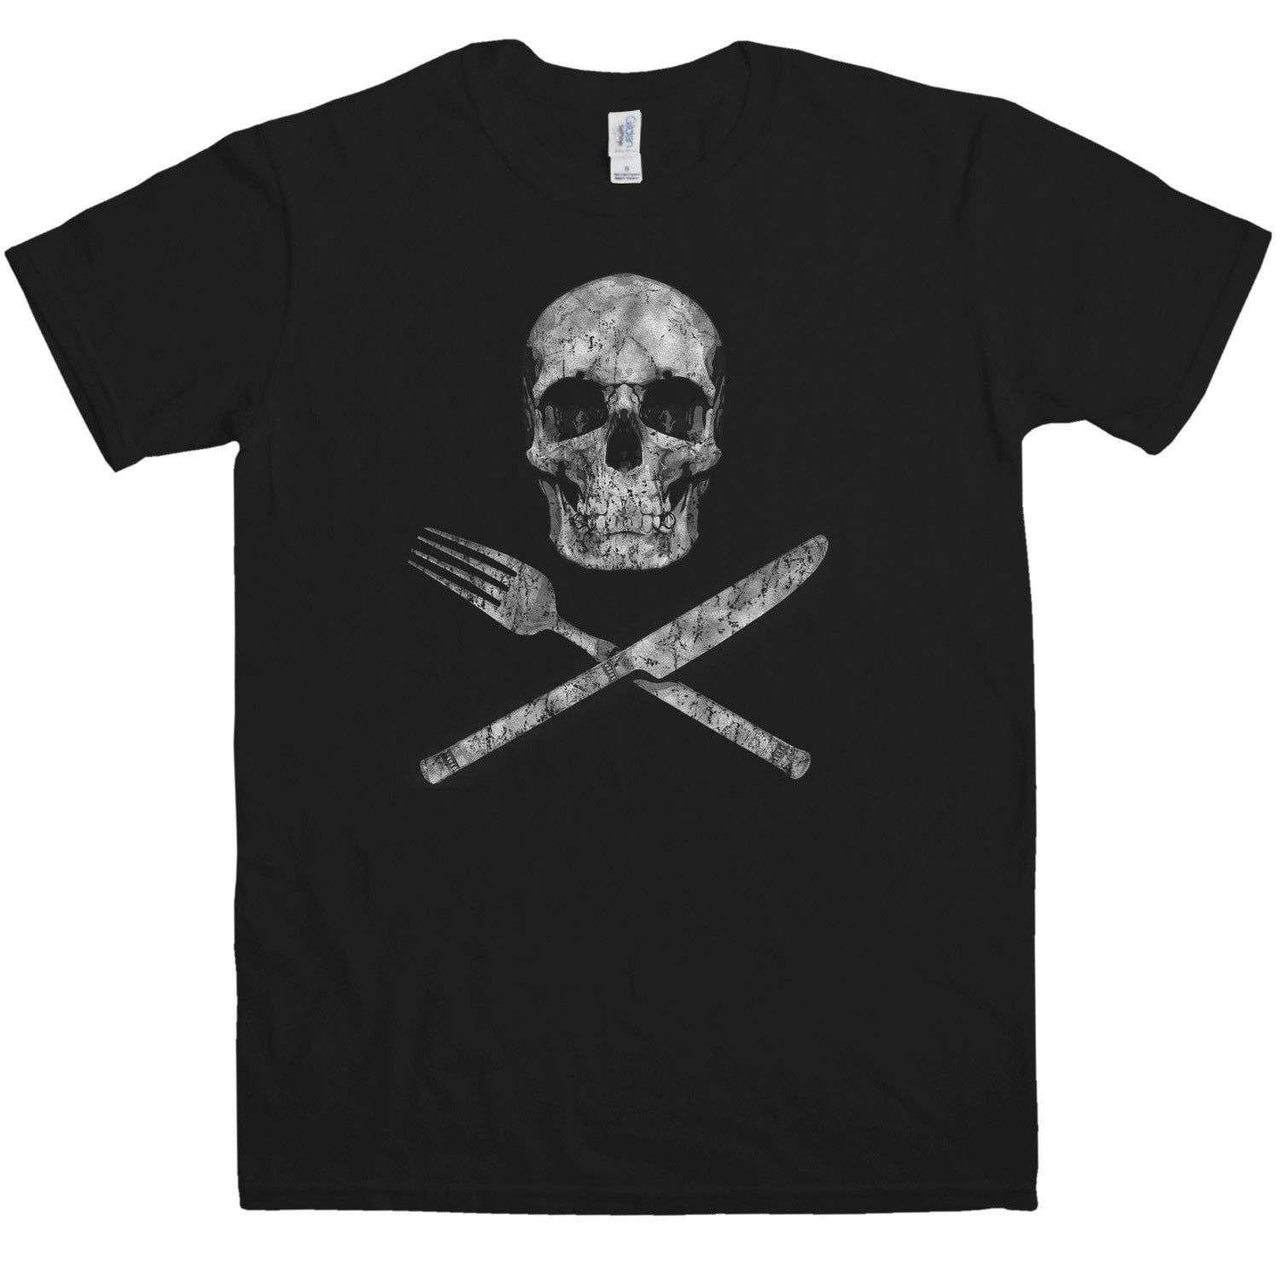 Knife Fork And Skull Unisex T-Shirt For Men And Women 8Ball